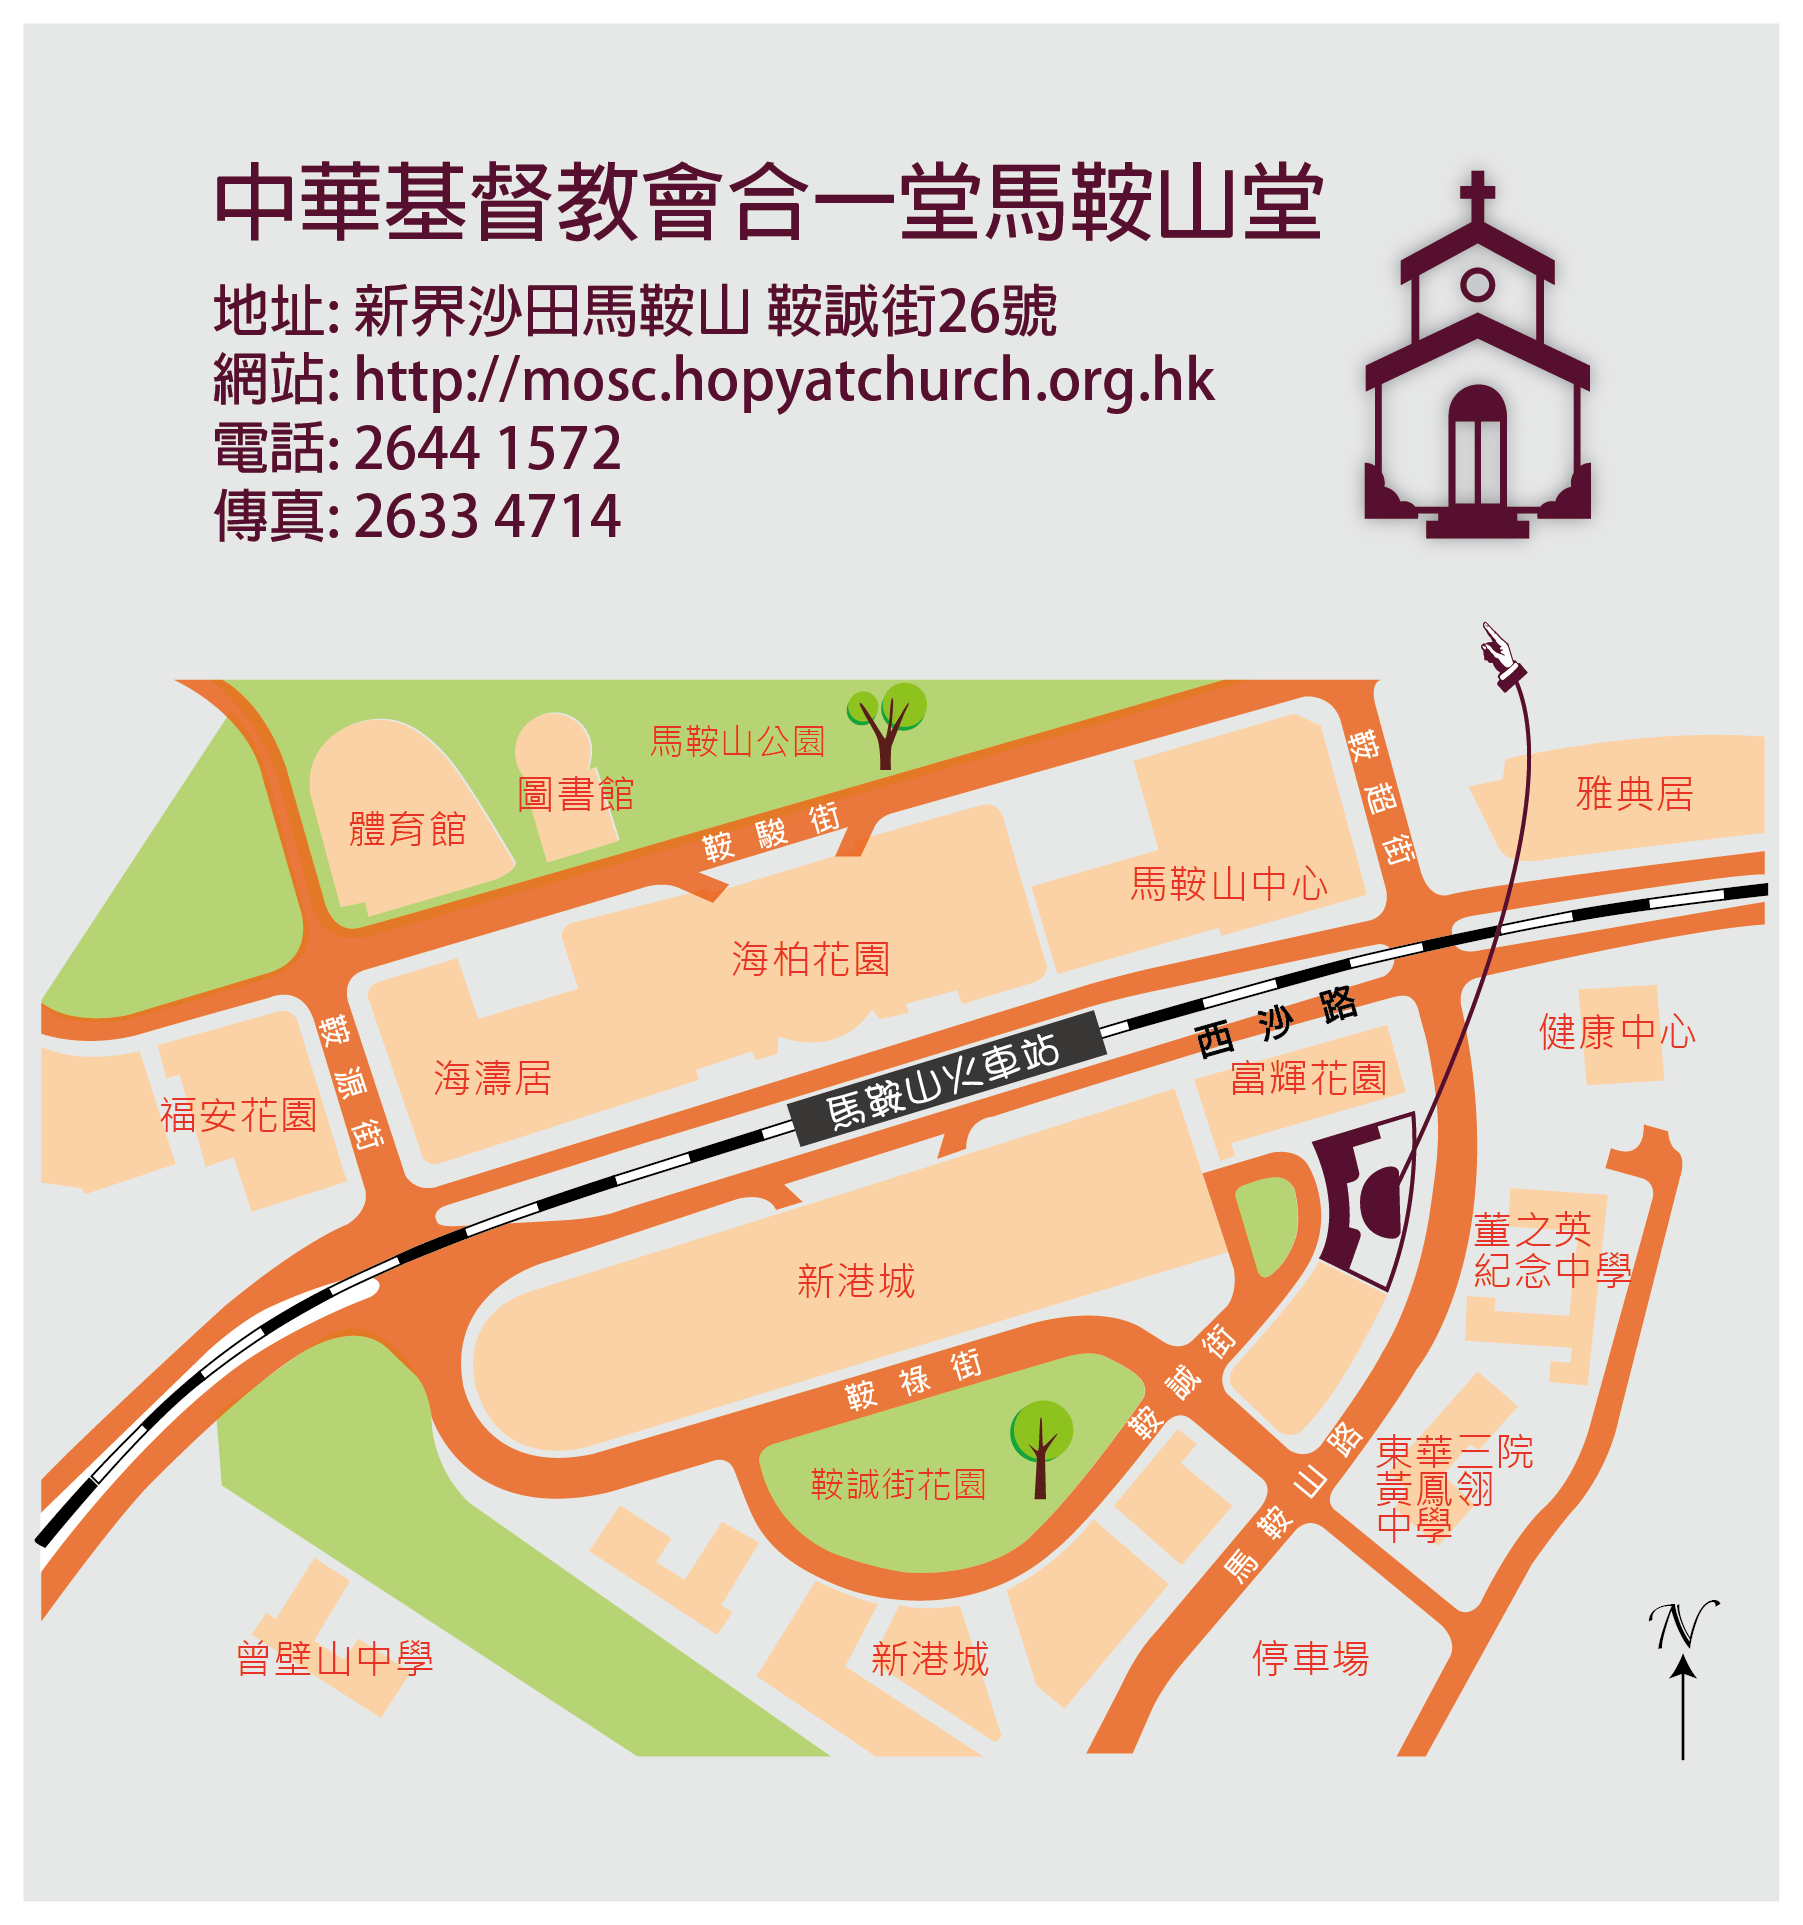 Church Map (26 On Shing Street, Ma On Shan, Hong Kong)